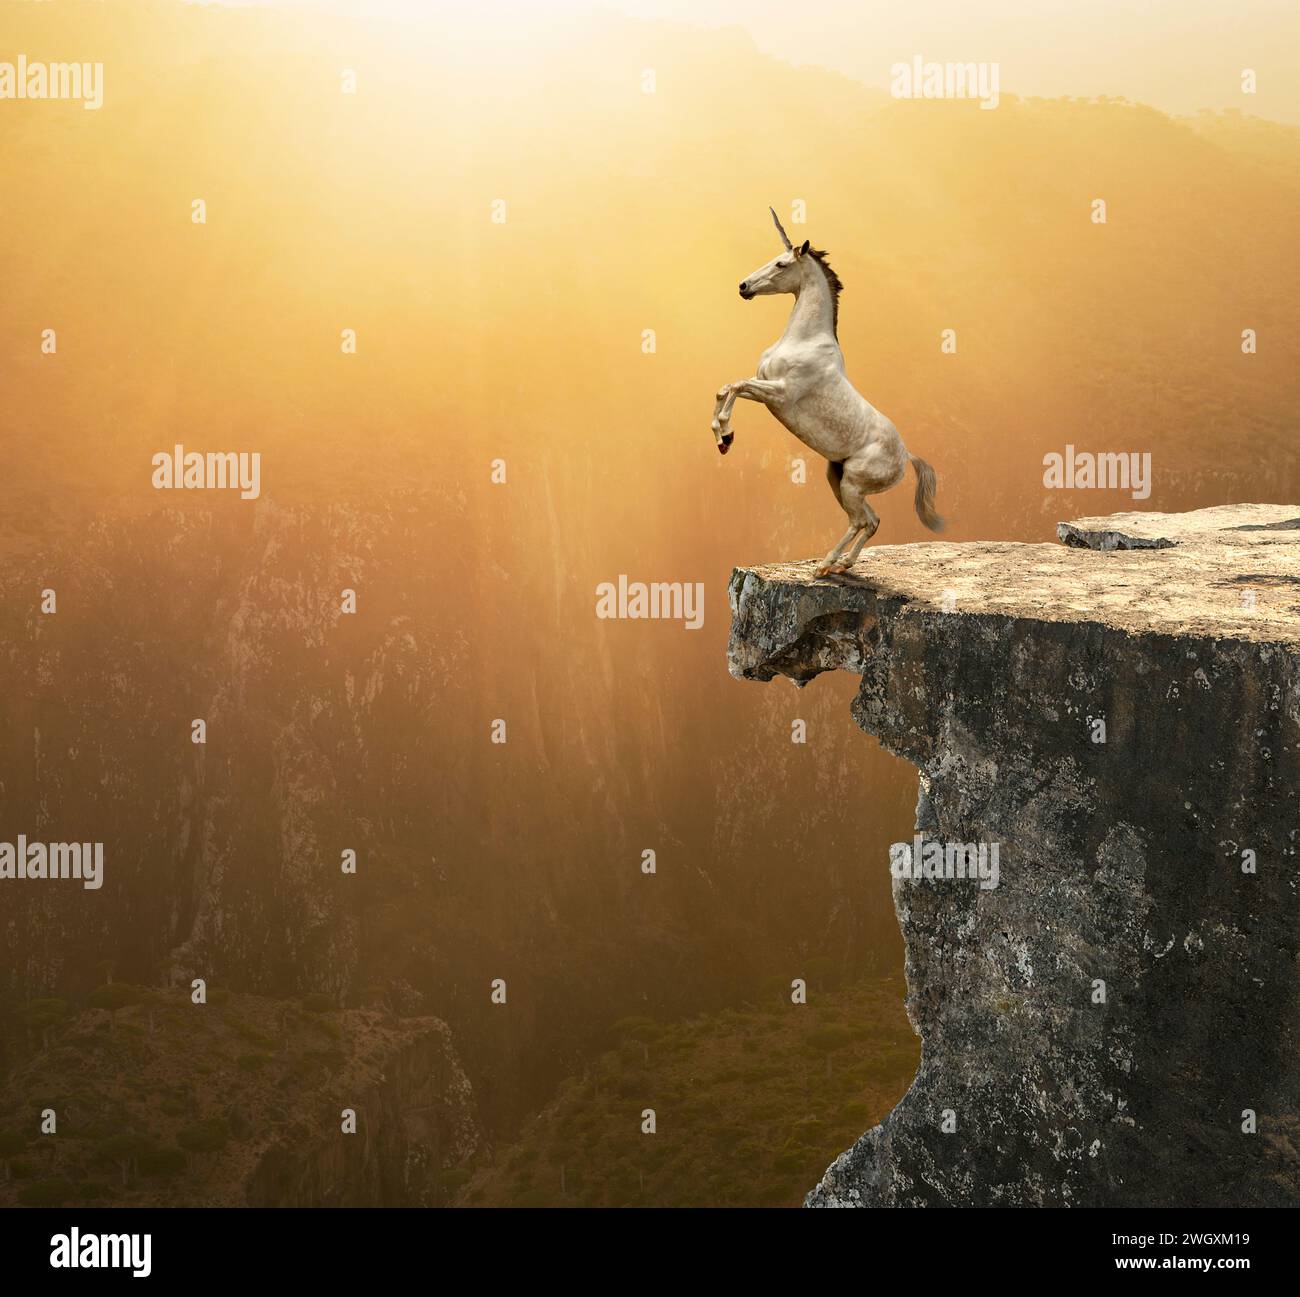 Une licorne surgit au bord d’une falaise sous un coucher de soleil doré dans une image sur la fantaisie, la mythologie et l’exceptionnel. Banque D'Images